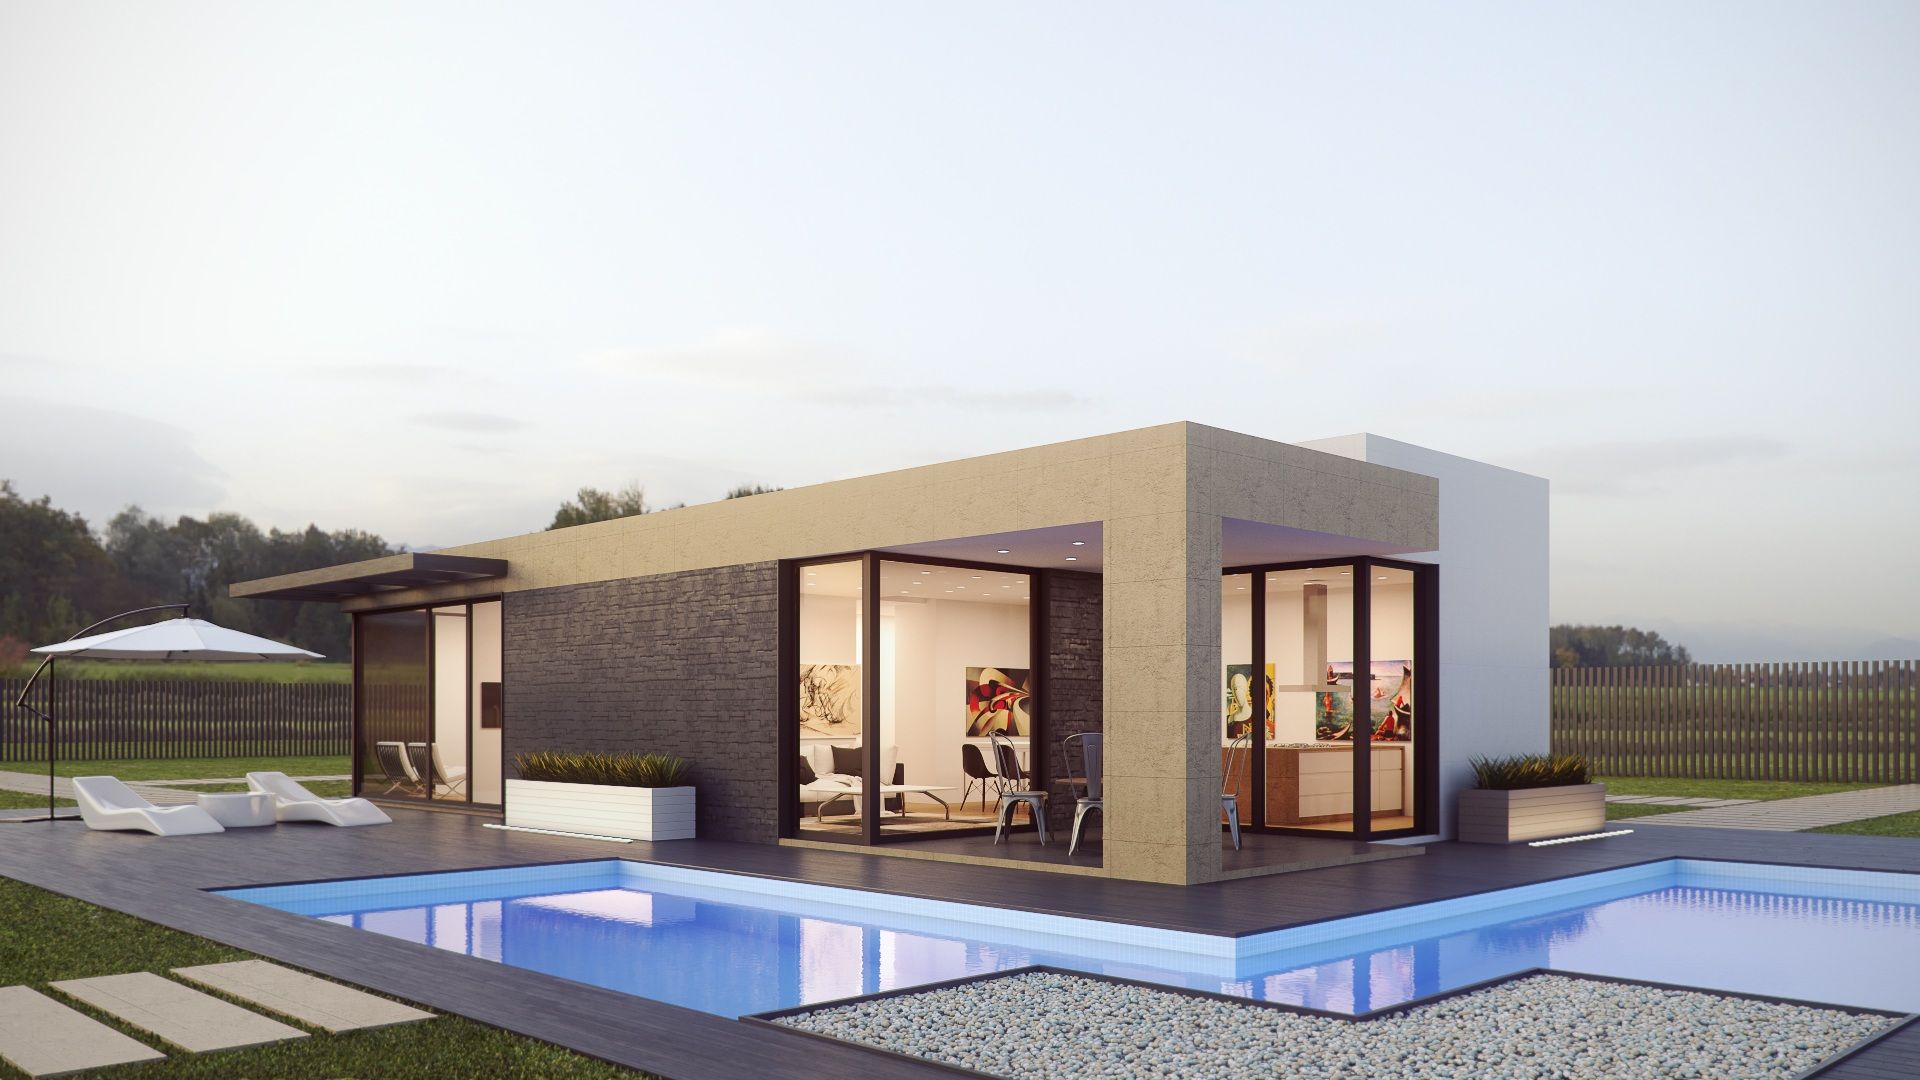 Casa 02 Acedo Arquitectura Casas unifamilares moderno, blanco, piscina, exterior